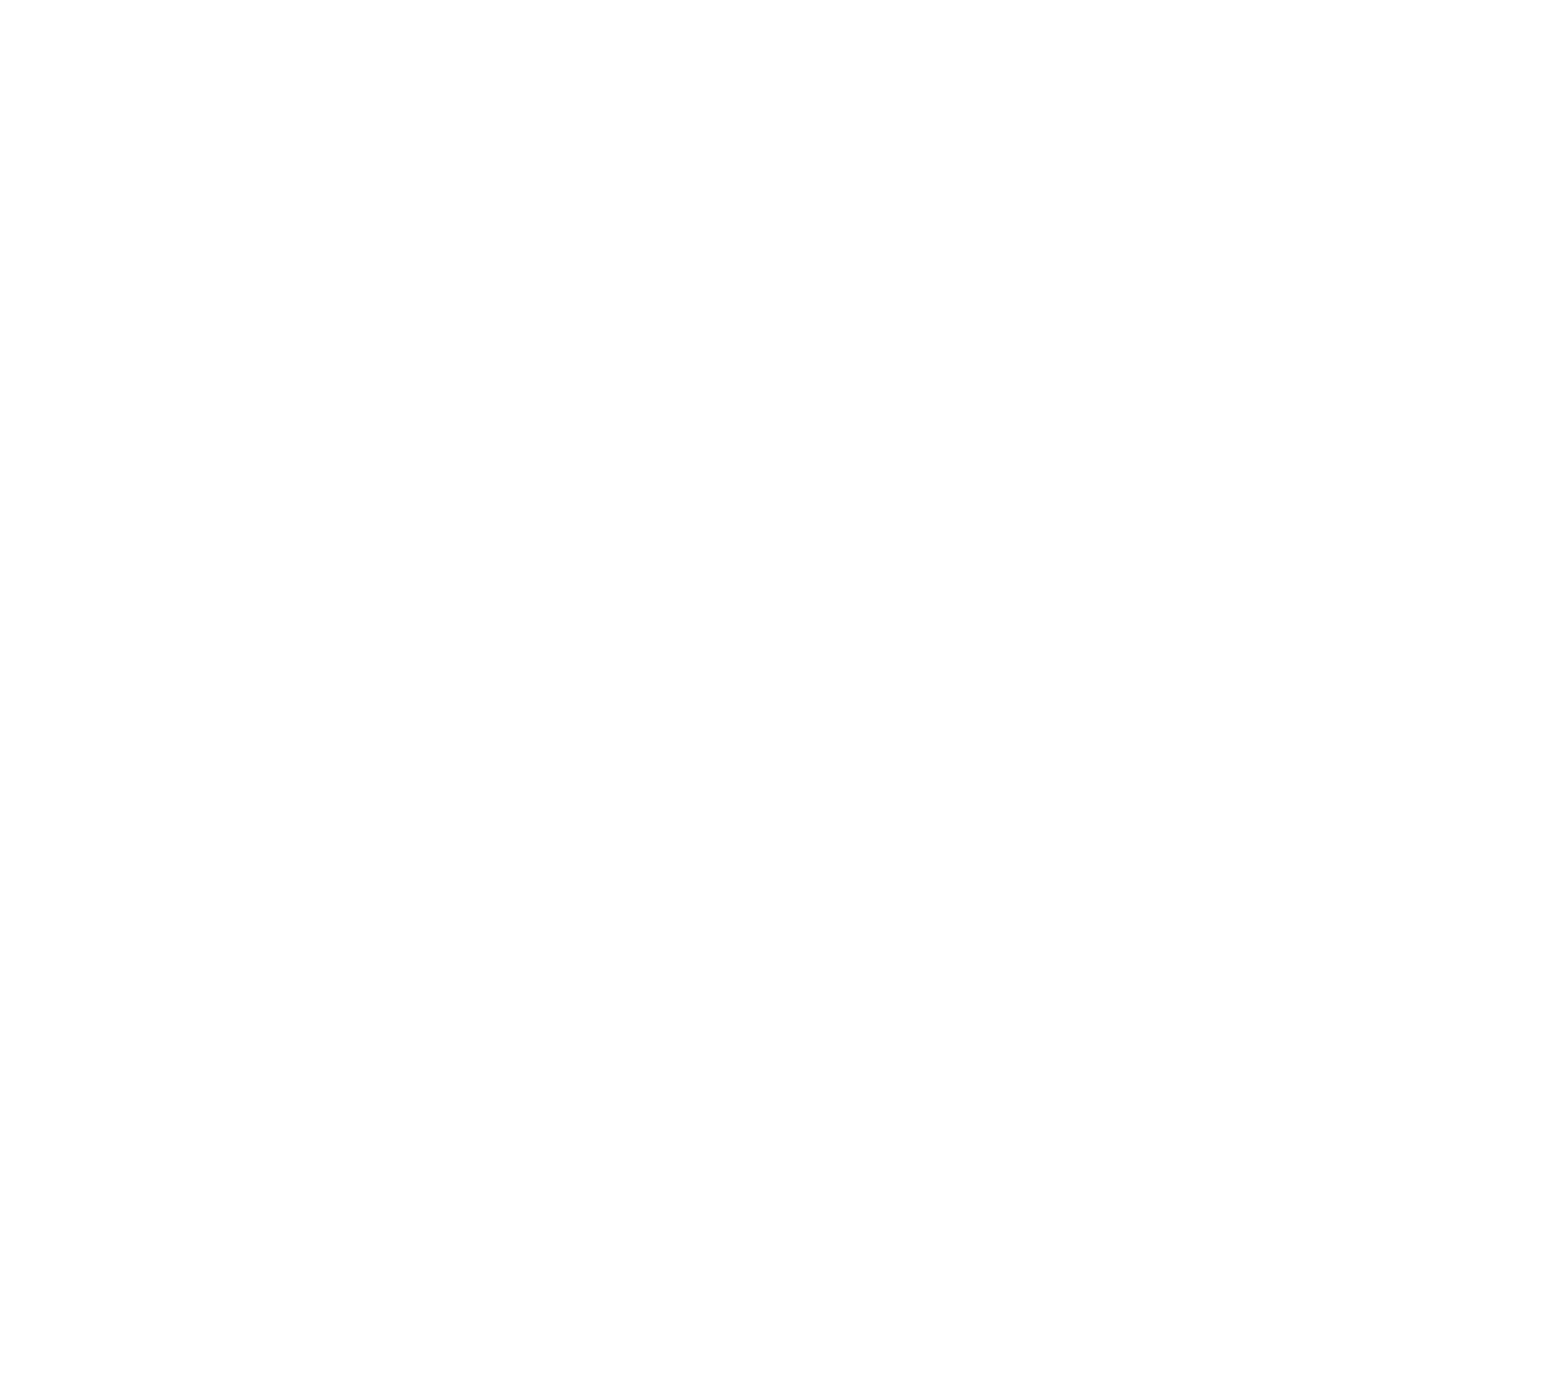 Dril-Quip Logo groß für dunkle Hintergründe (transparentes PNG)